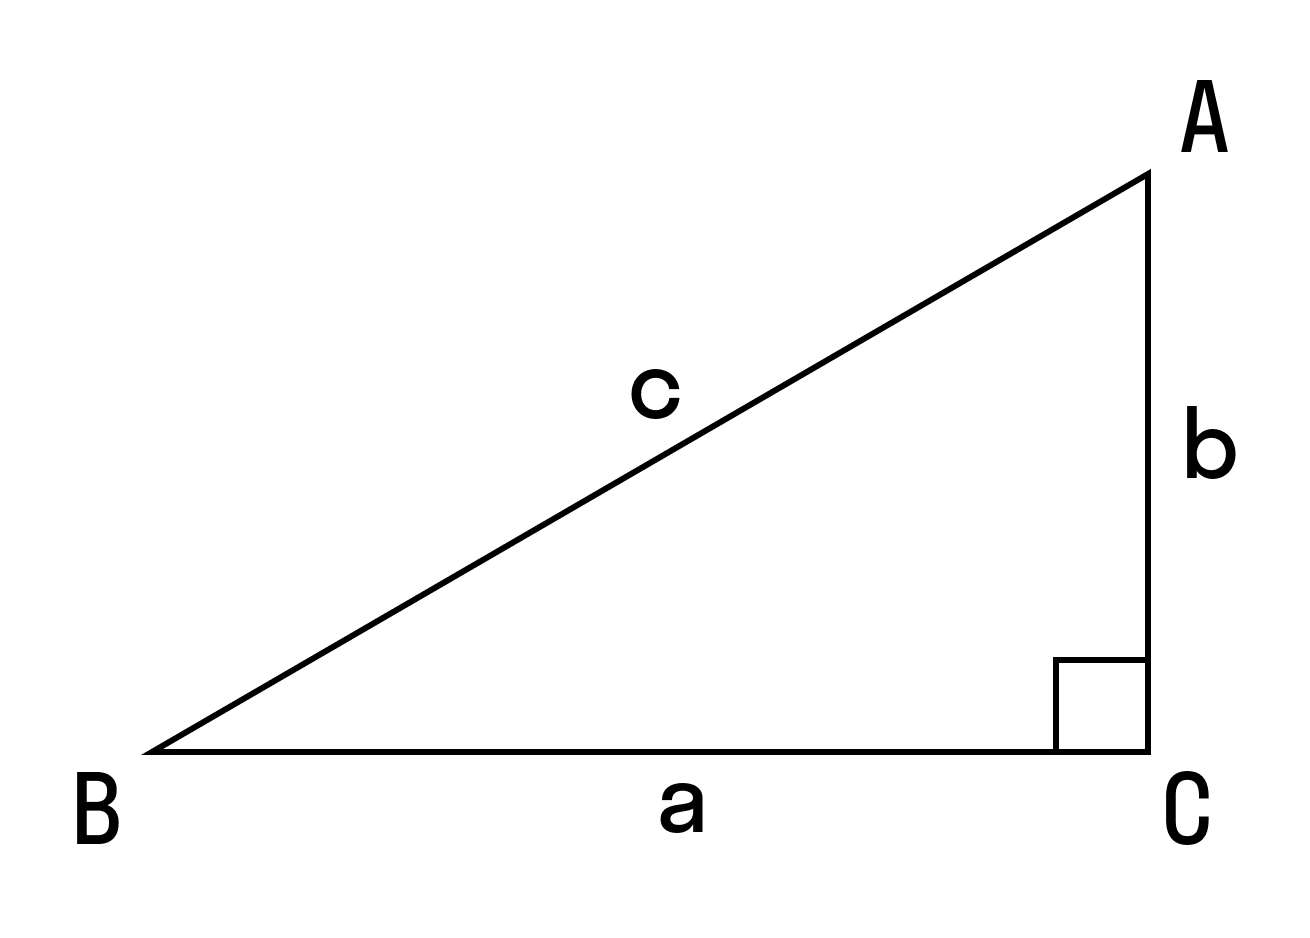 чтобы найти площадь прямоугольного треугольника надо